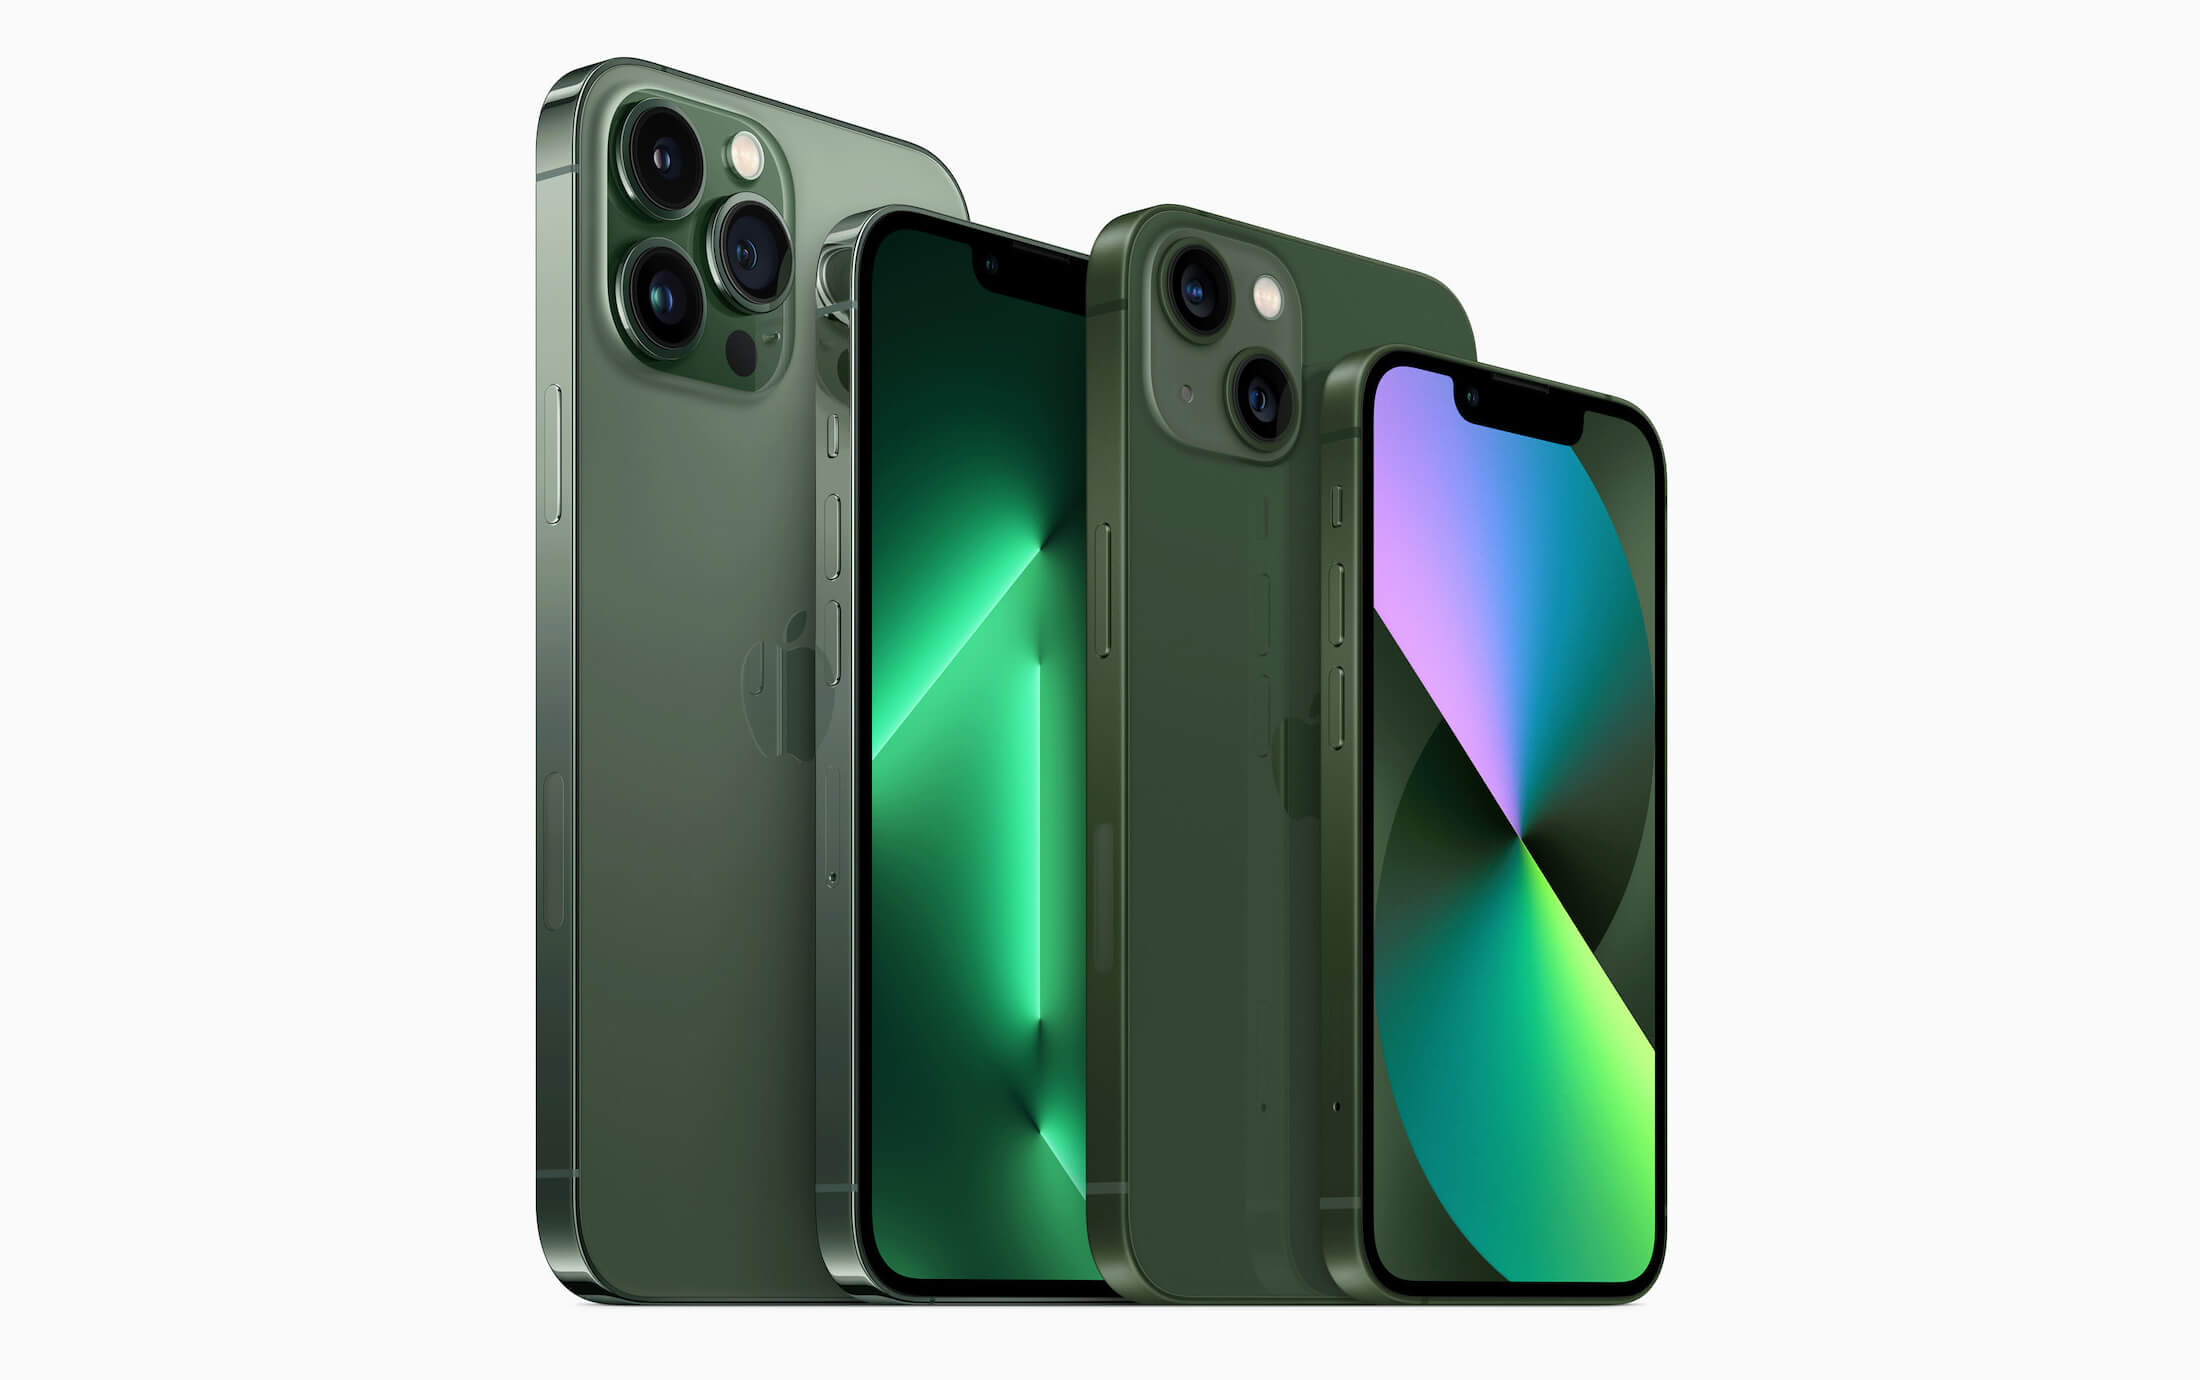 Представлены новые версии iPhone 13 и iPhone 13 Pro в зелёных цветах